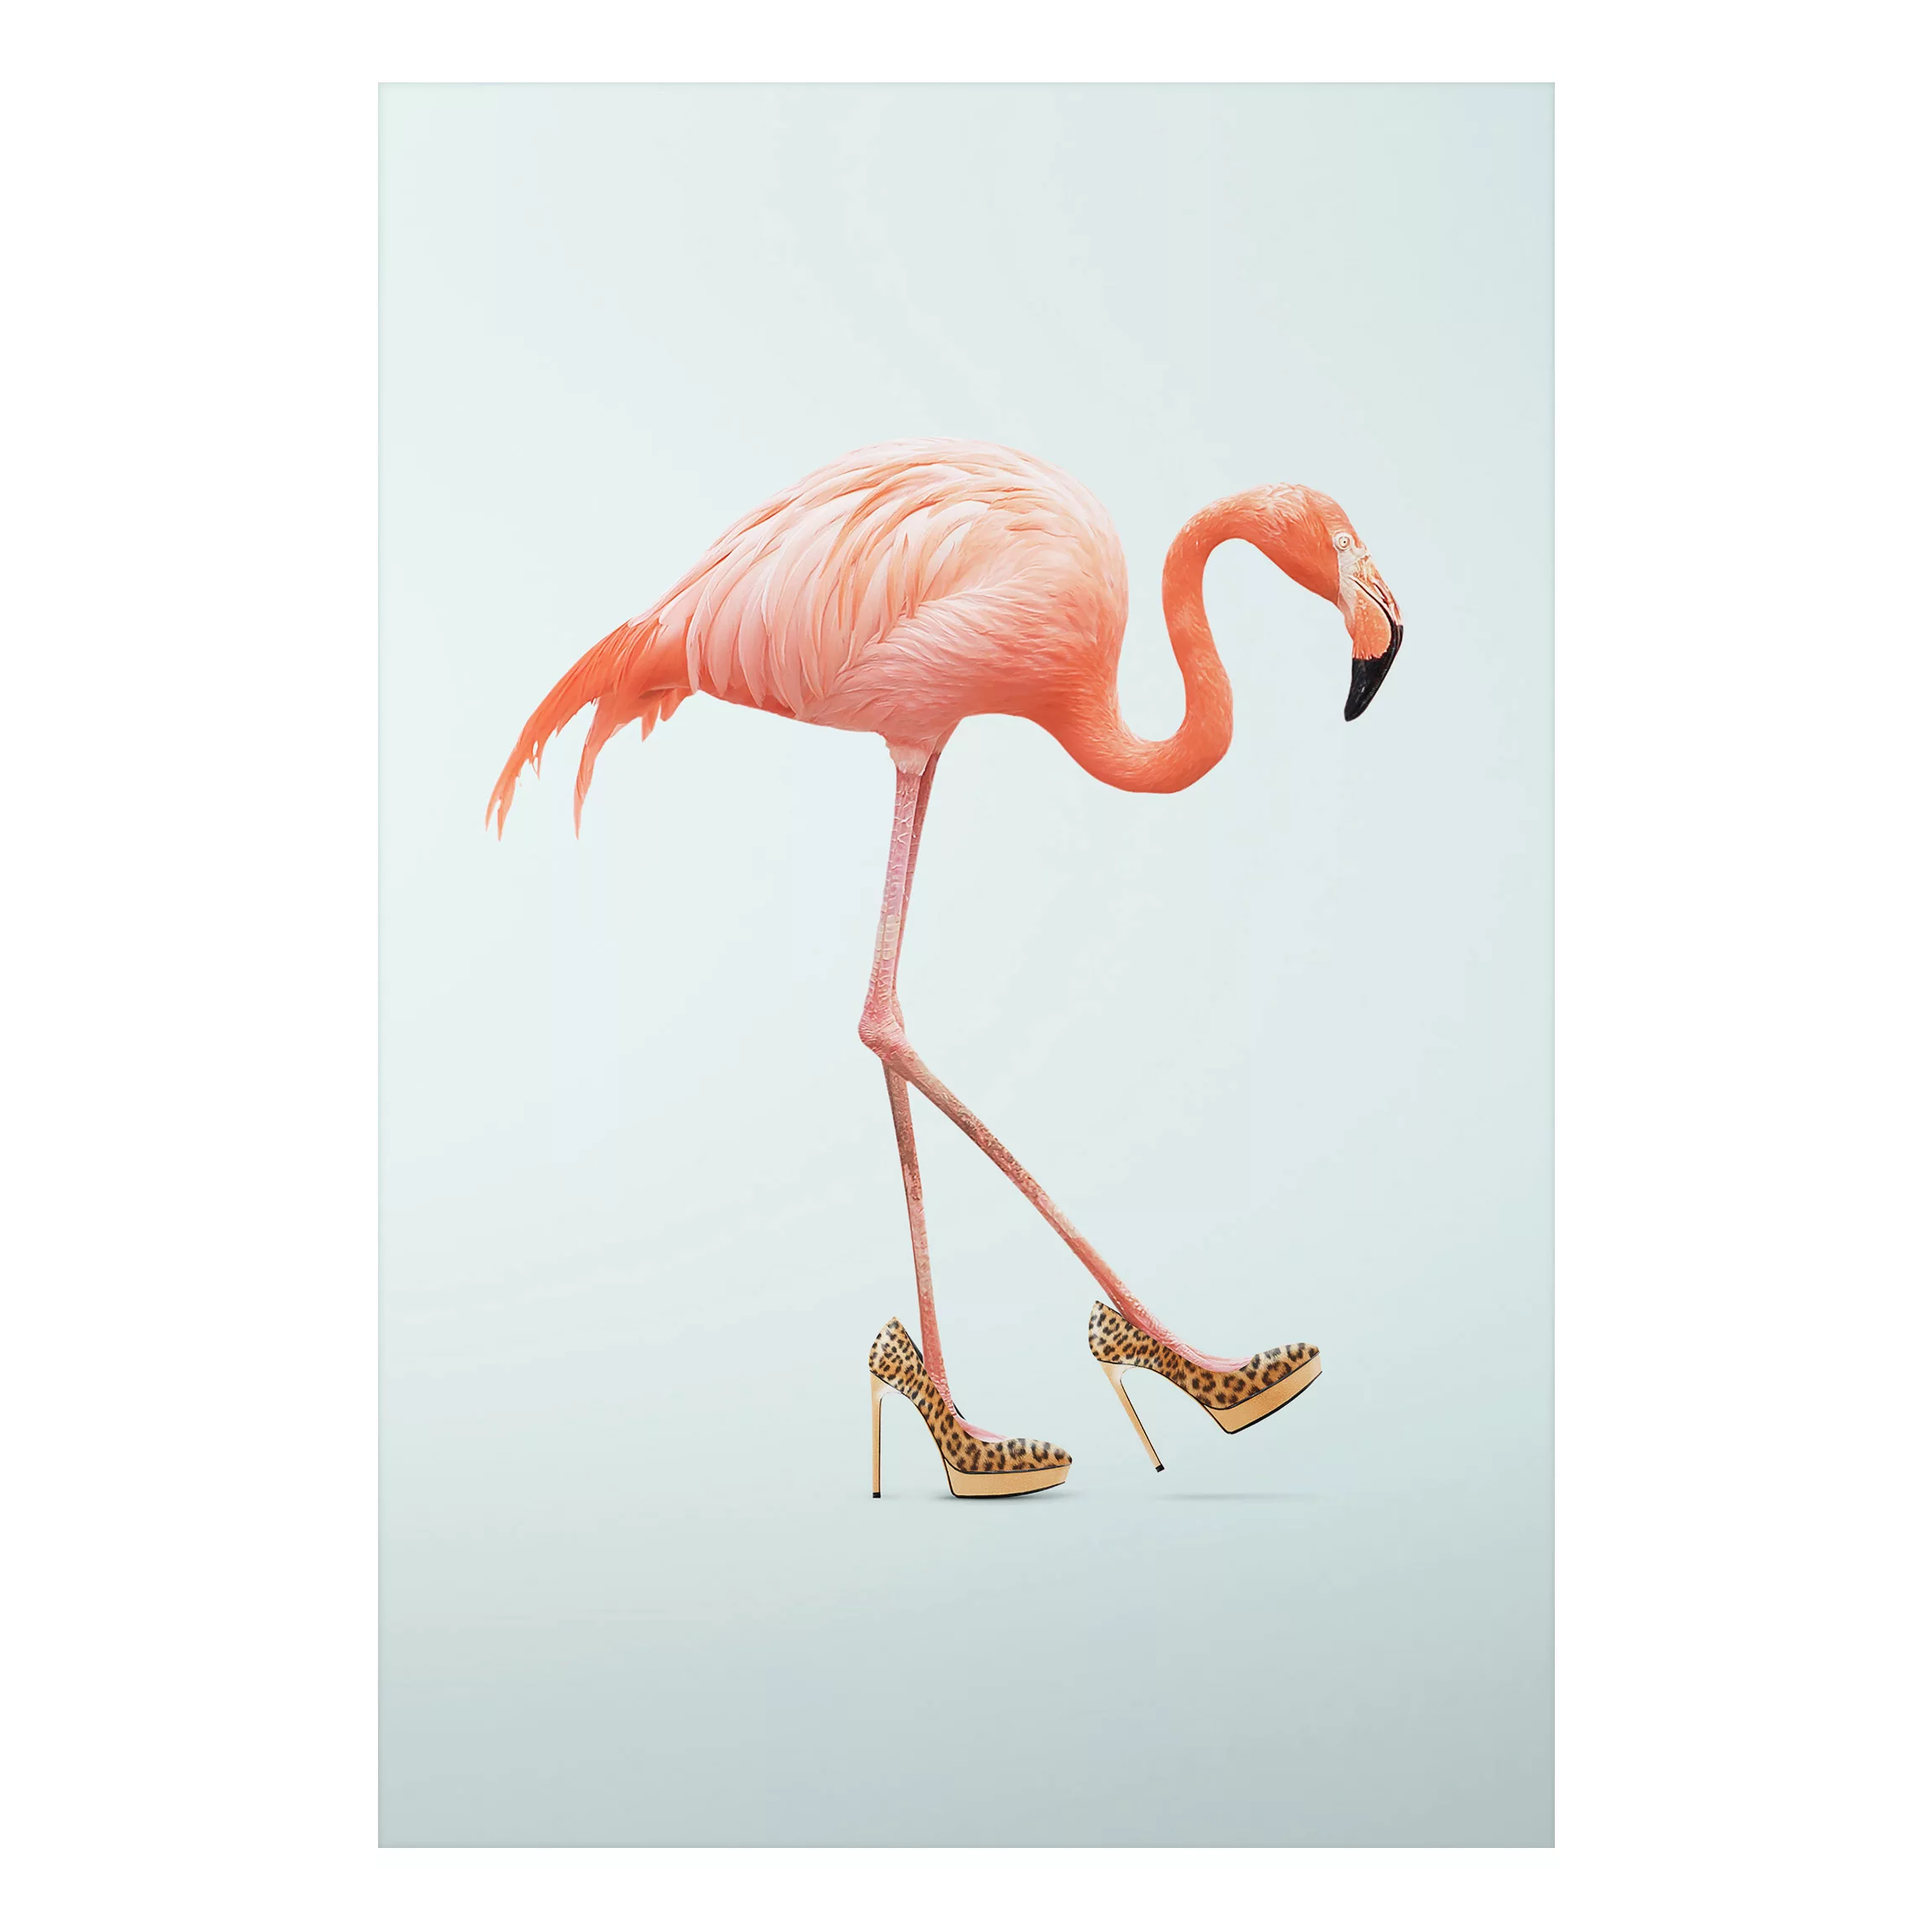 Alu-Dibond Bild Kunstdruck - Hochformat 2:3 Flamingo mit High Heels günstig online kaufen